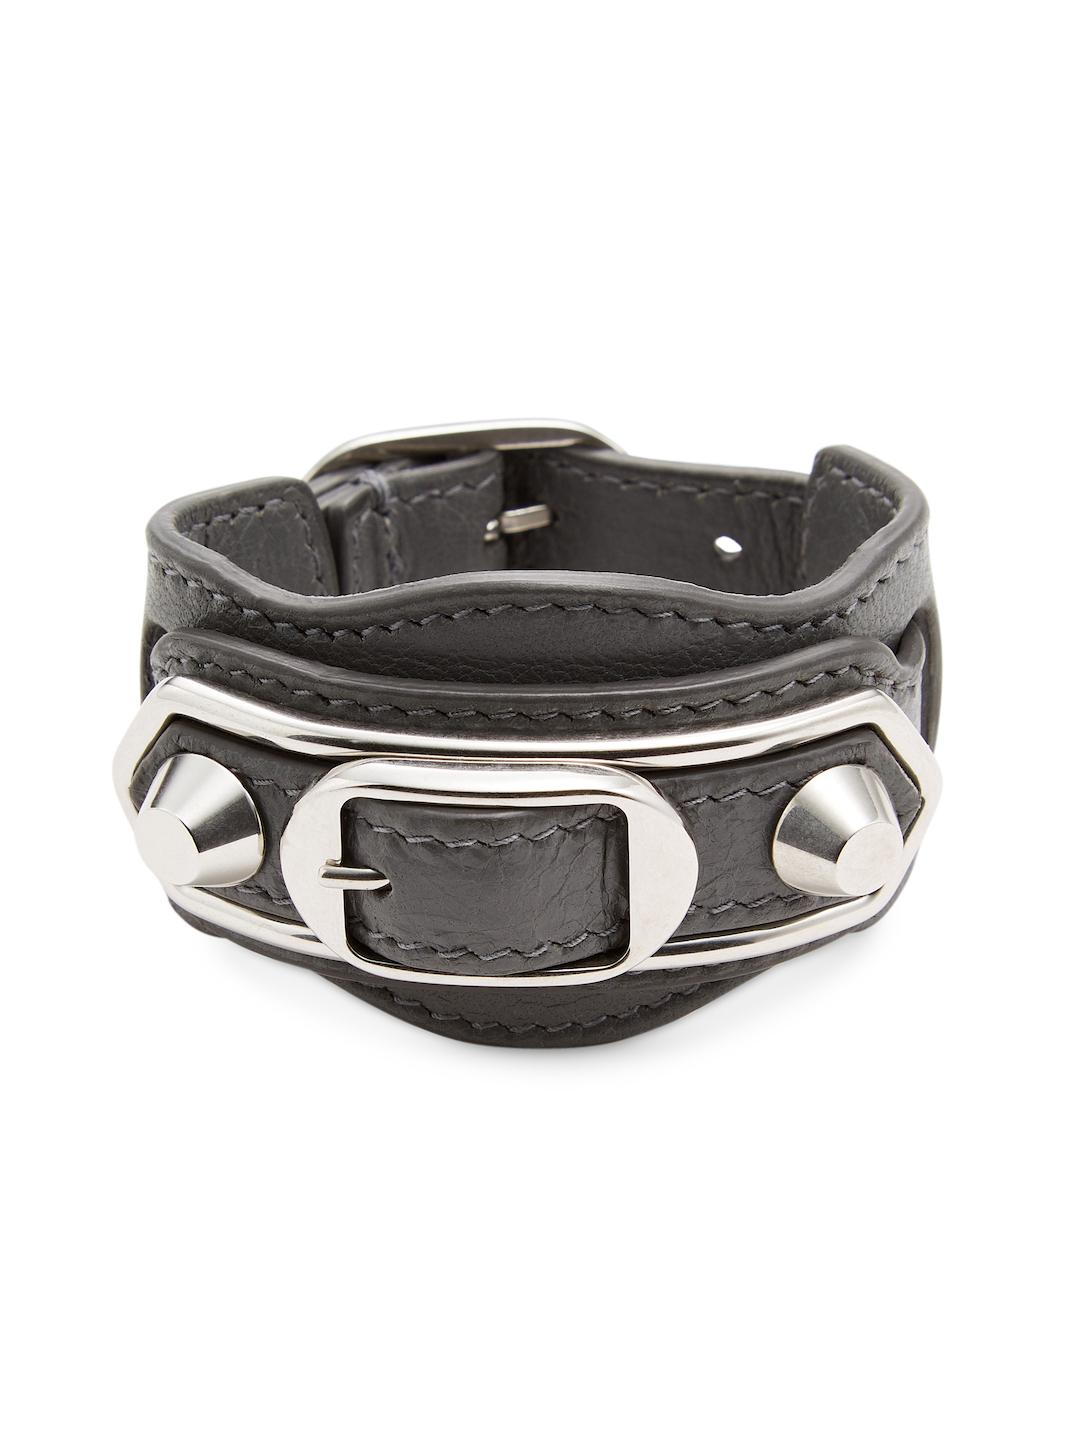 balenciaga studded leather bracelet - 50% remise -  www.muminlerotomotiv.com.tr